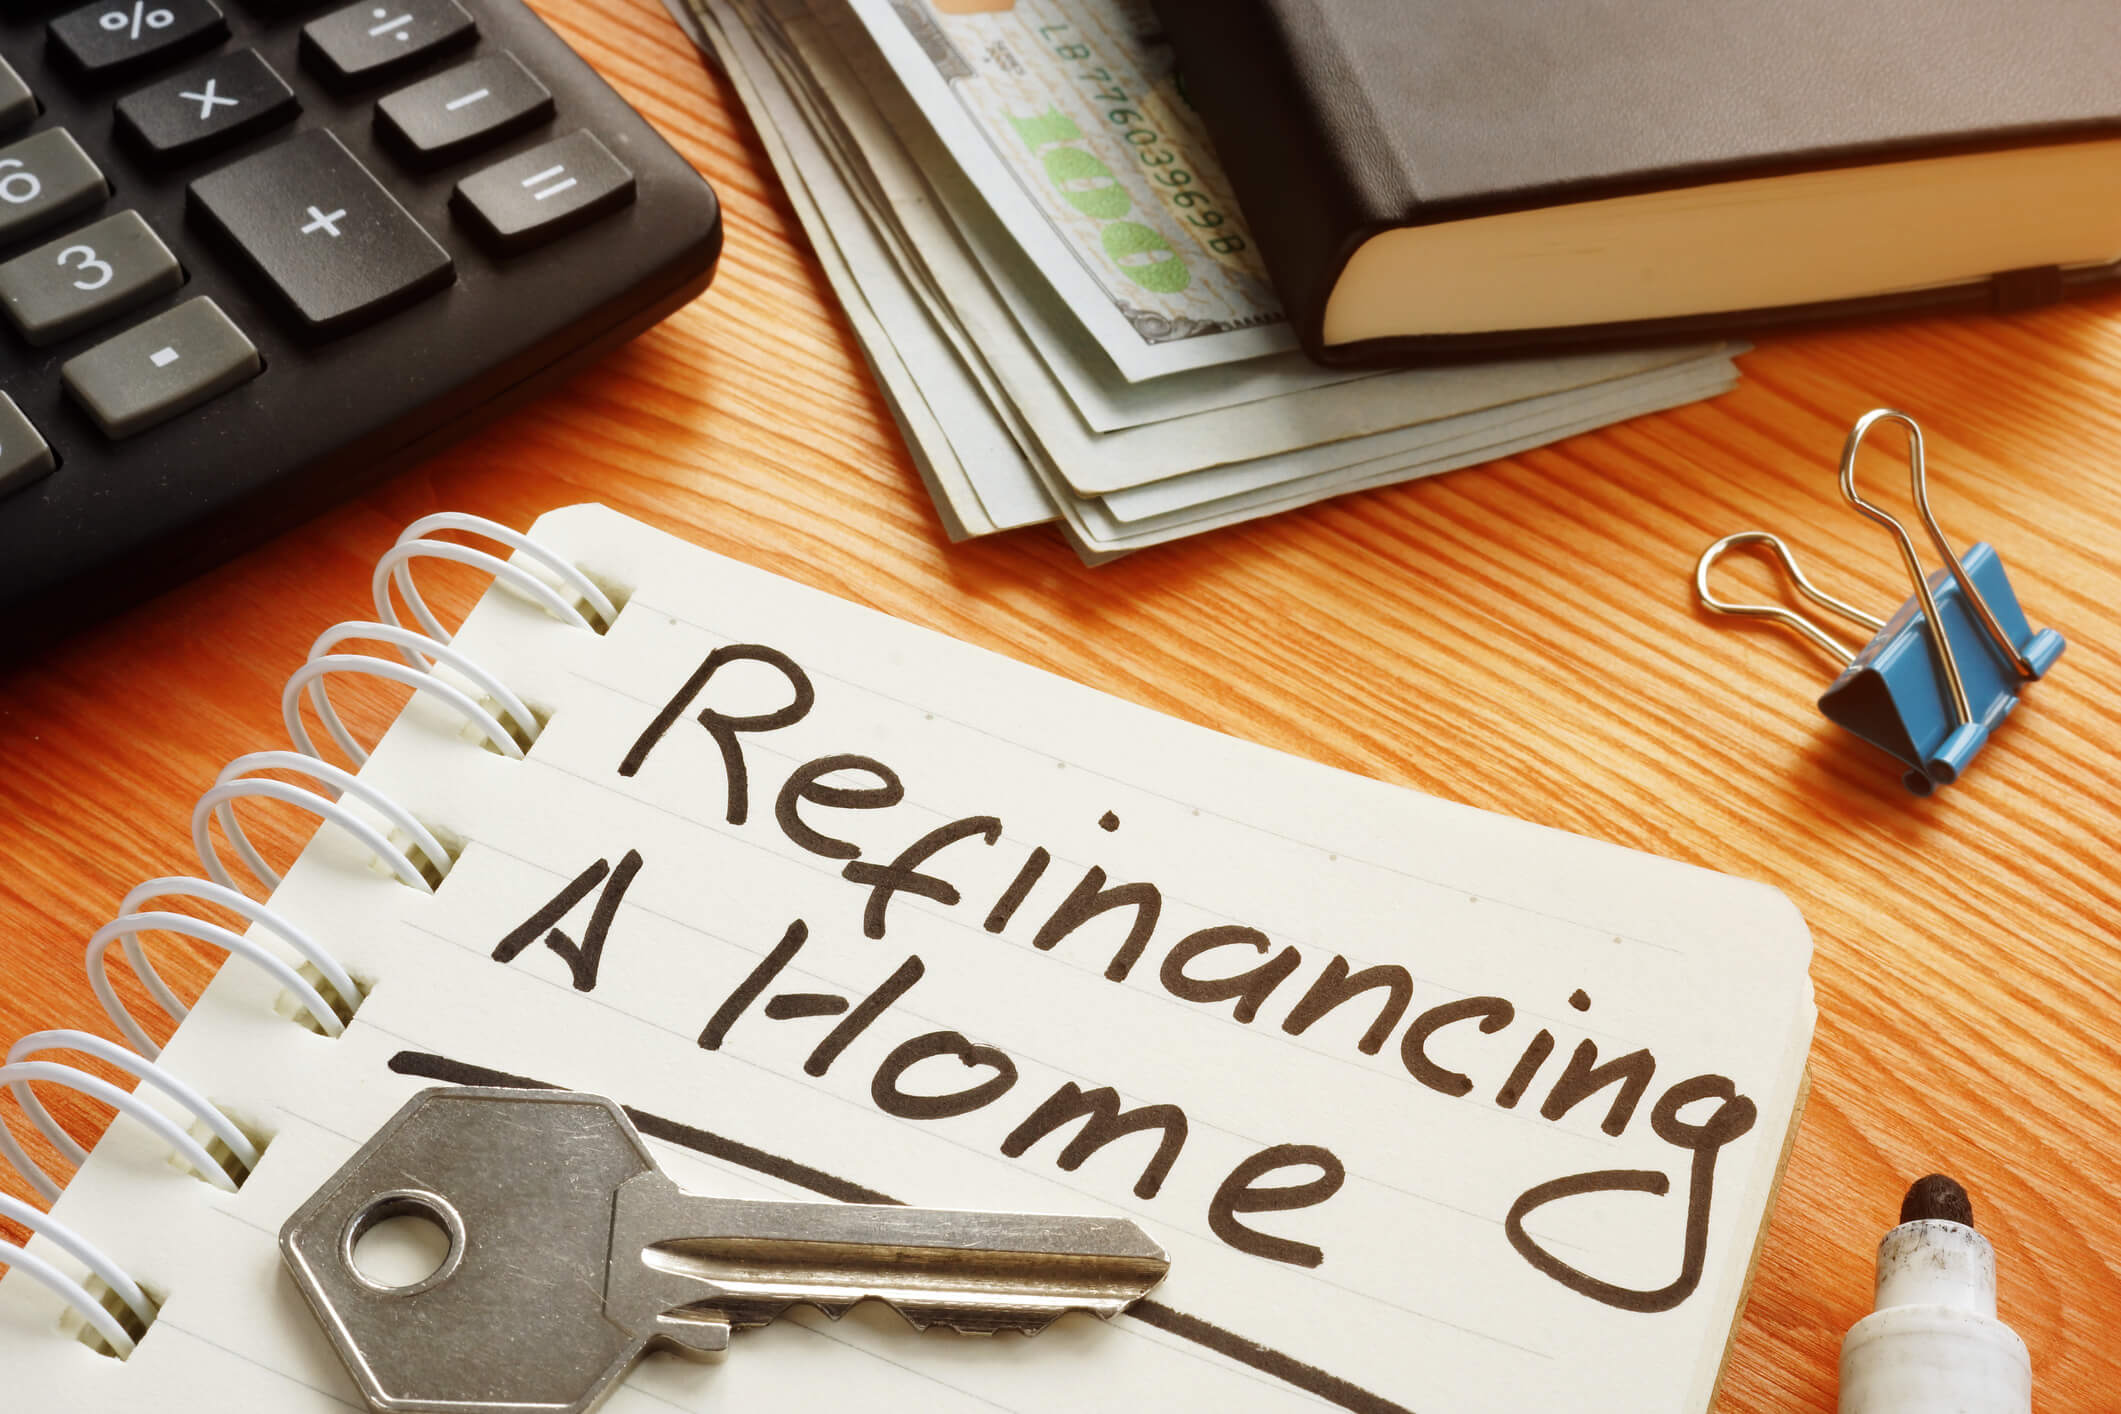 Refinance housing loan